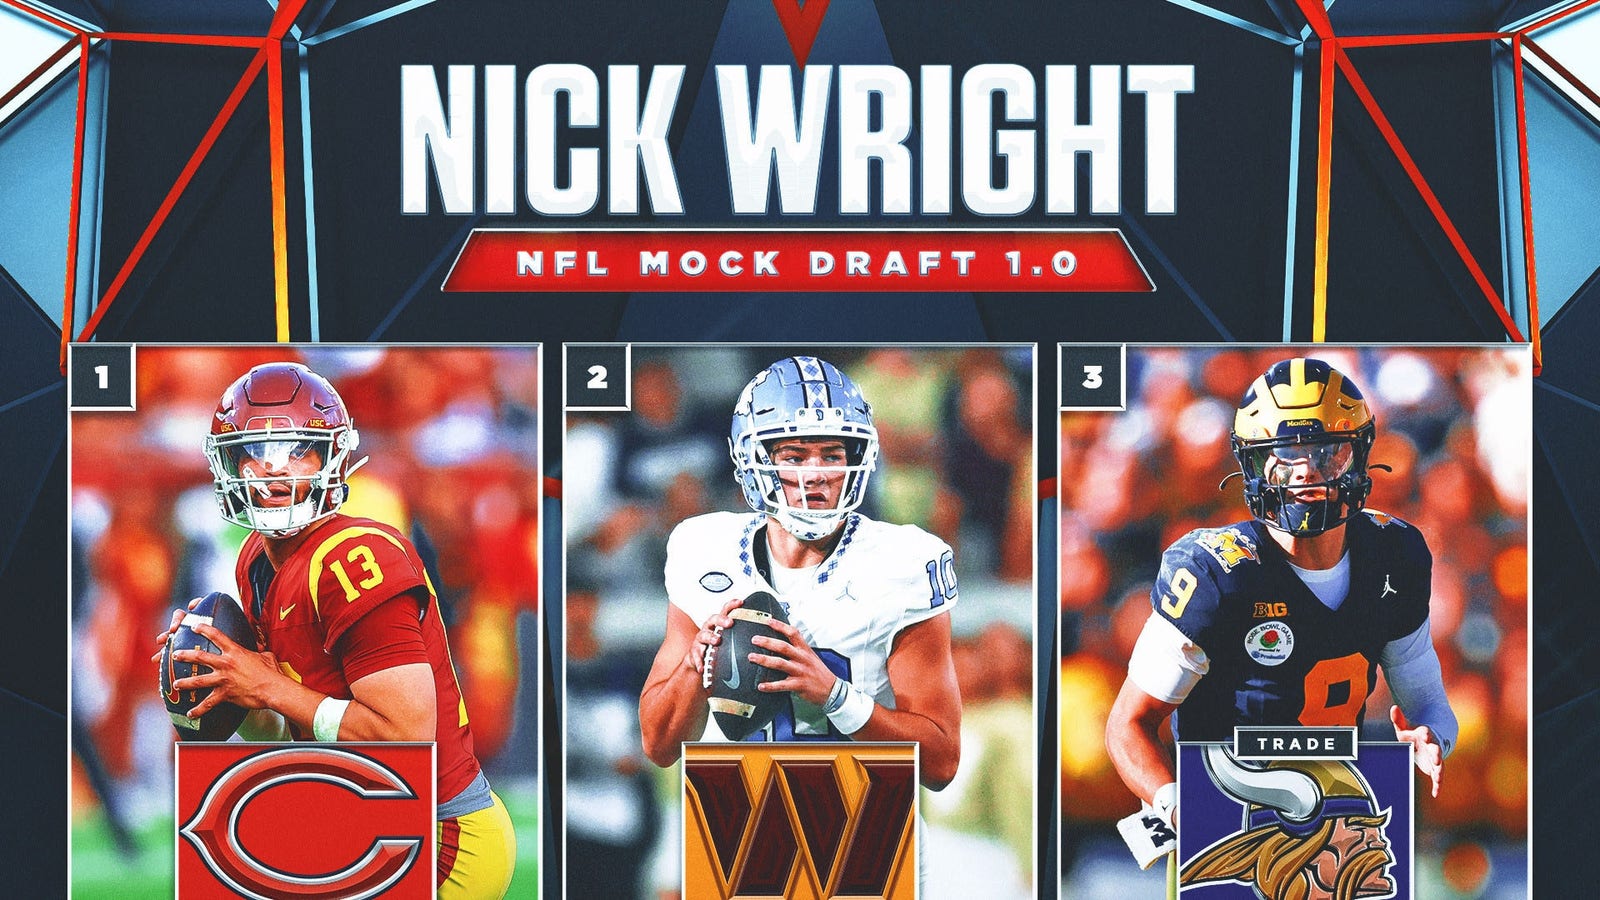 Caleb Williams, Marvin Harrison Jr. headline Nick’s NFL mock draft 